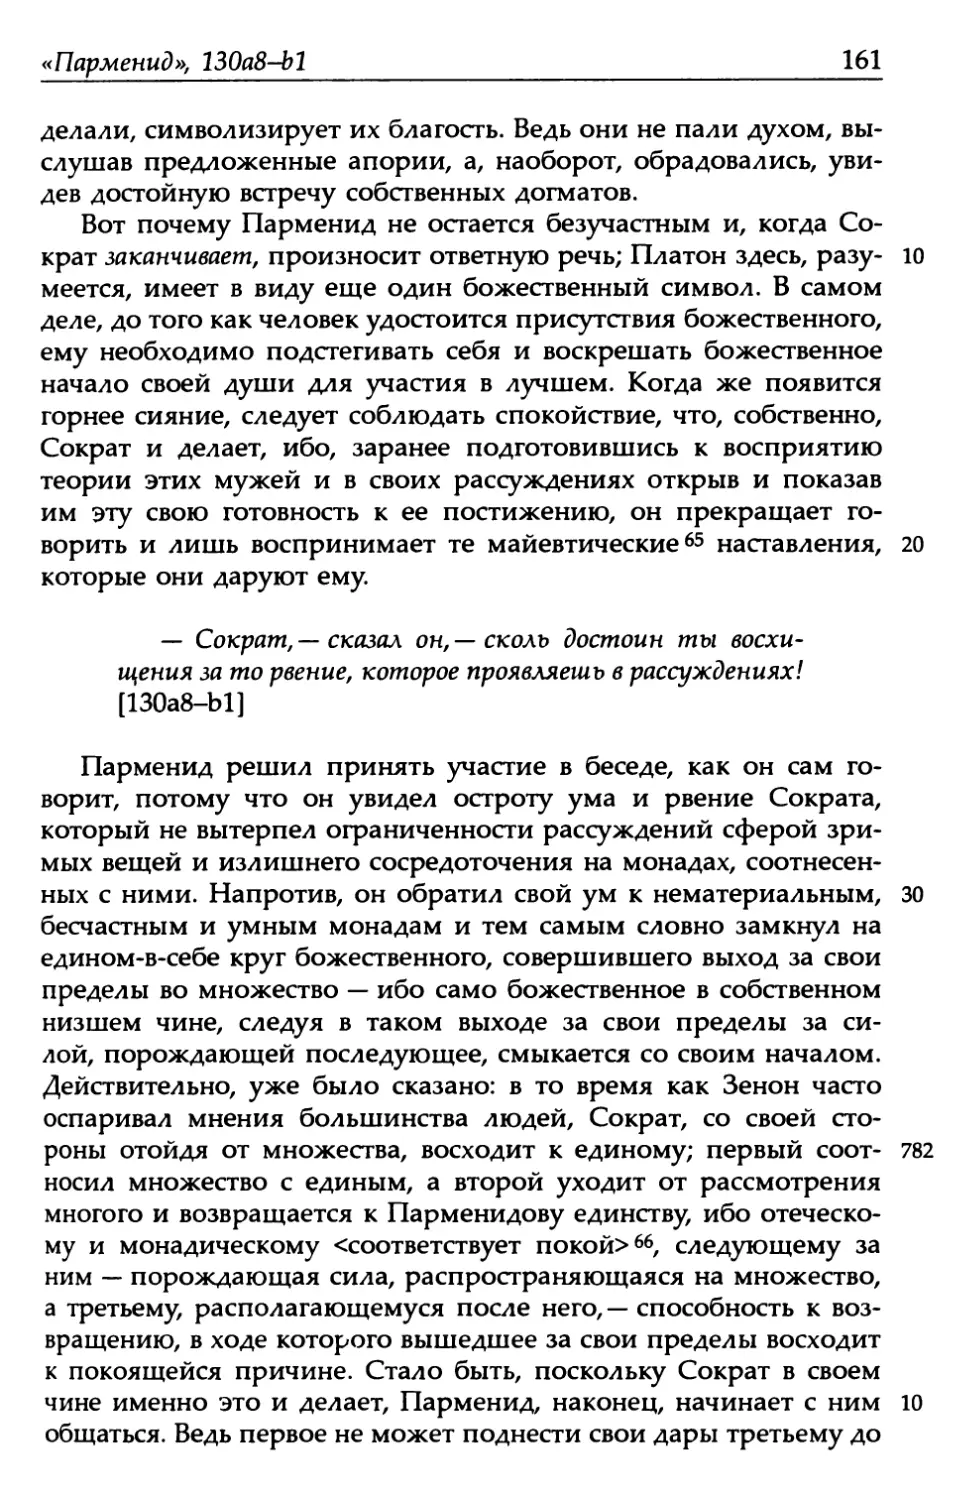 «Парменид», 130а8-b1